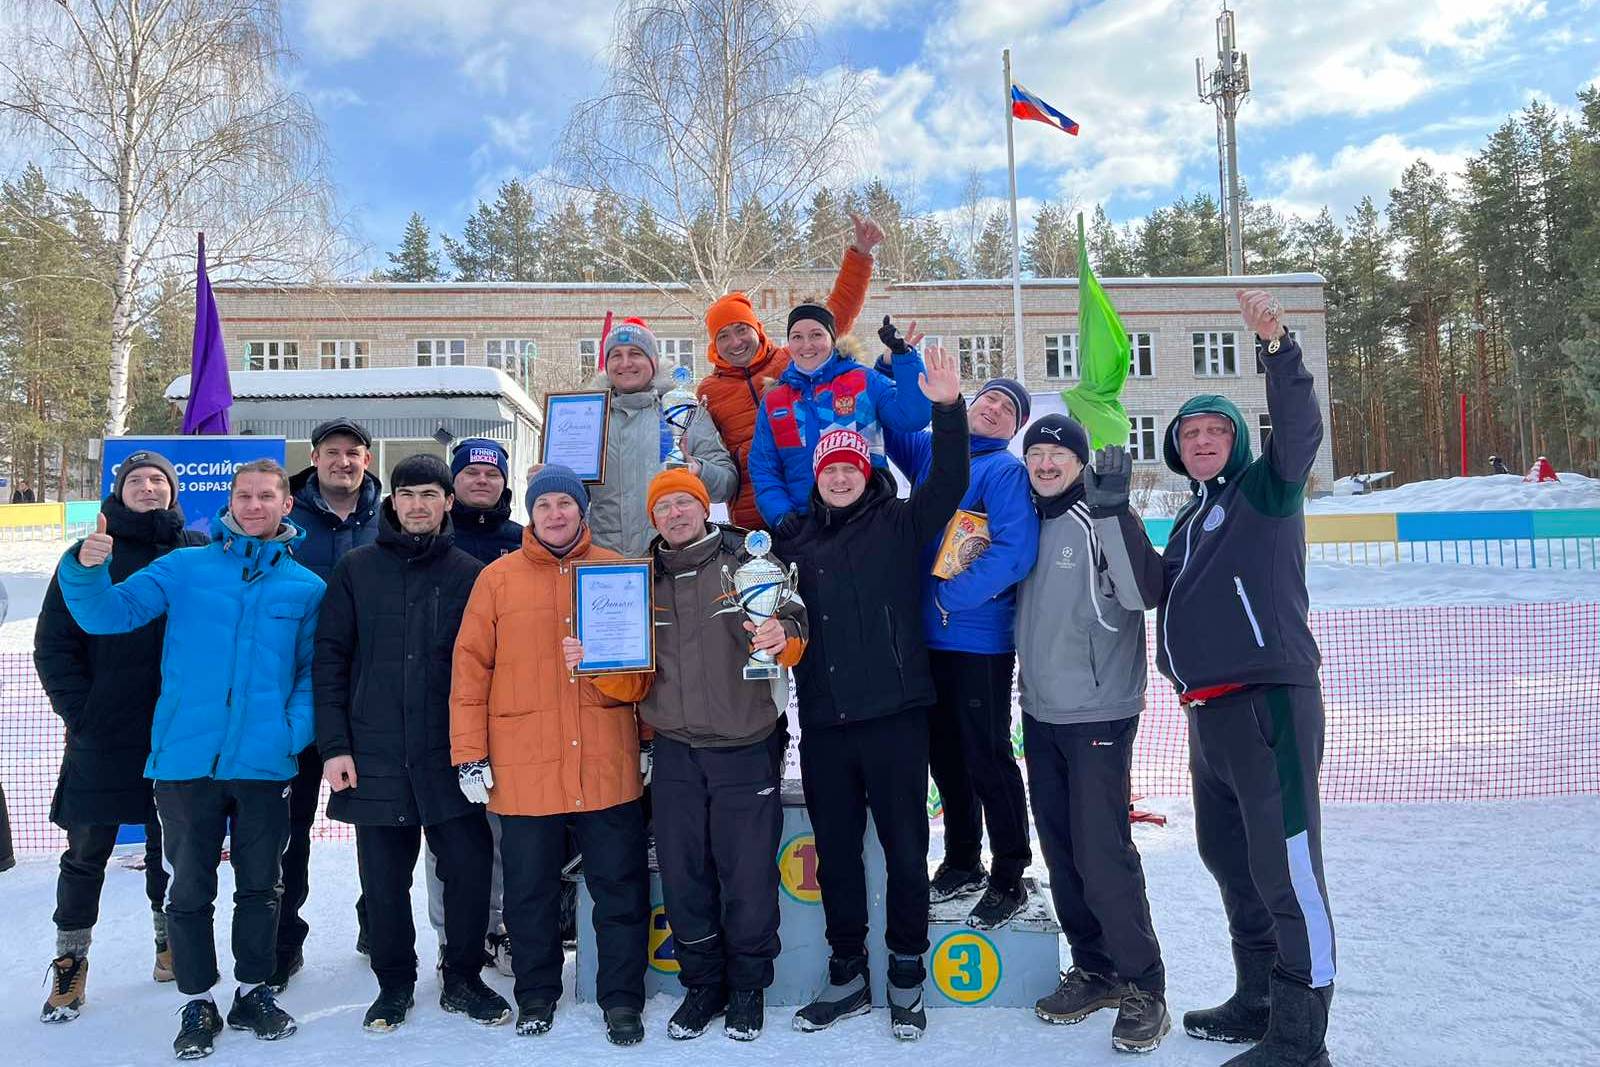 Мининский университет победил в профсоюзных соревнованиях по лыжным гонкам на фестивале «Румяная лыжня»